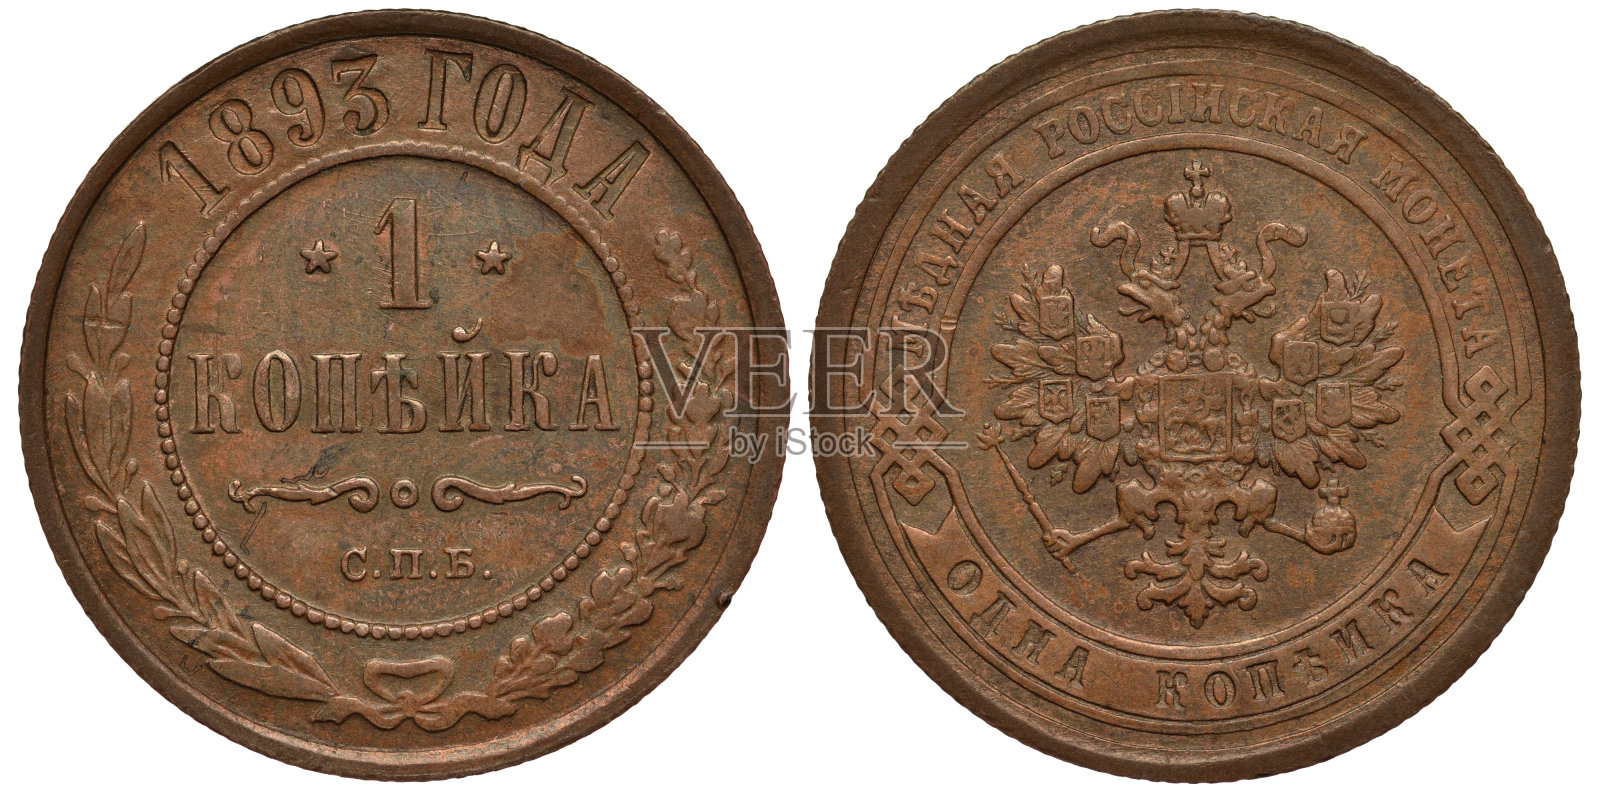 俄罗斯1893年俄罗斯铜币1戈比，价值以珠子为圆圈，两侧为月桂和橡树枝，日期以上，手持权杖和圆球的皇鹰，胸前和翅膀上的盾牌，照片摄影图片